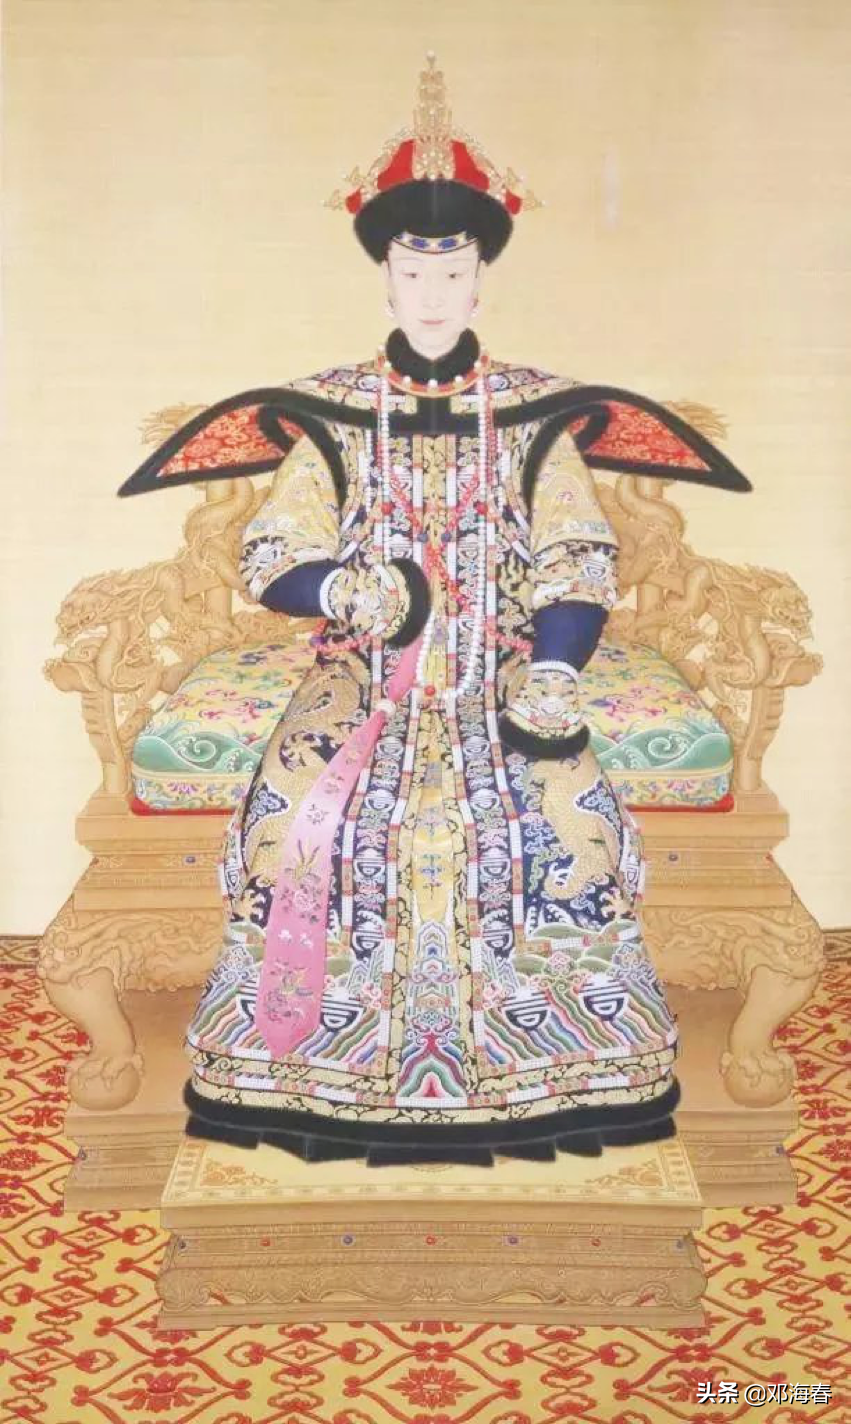 她是富察皇后唯一的后代，被乾隆“圈养”半生，并赐护身符5240个